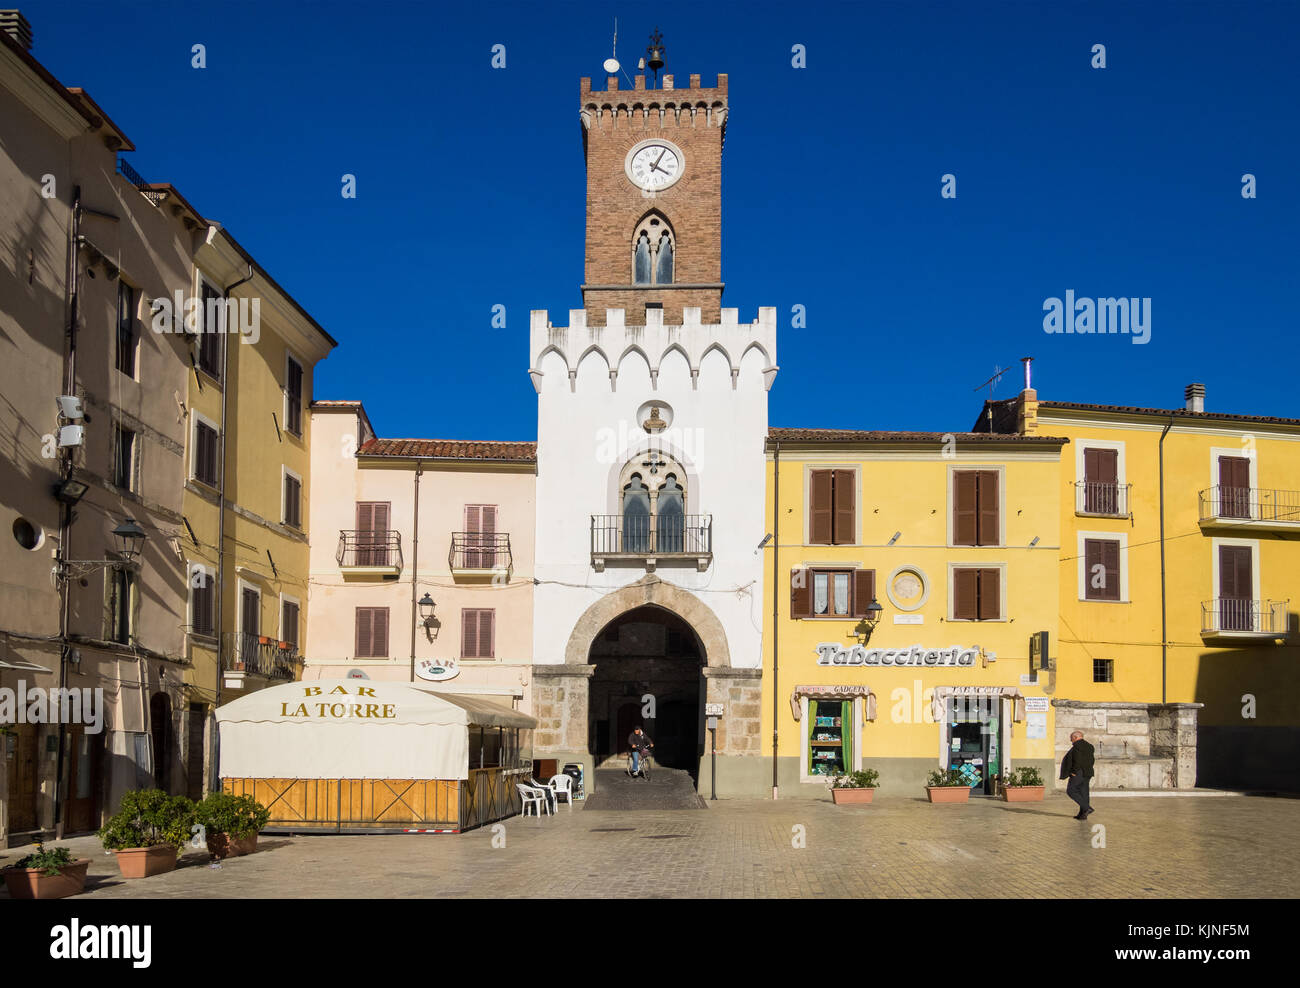 Borgo San Giovanni (Italien) - das historische Zentrum von einem alten und sehr kleinen Stone Town in Region Sabina, Provinz Rieti, Italien zentral Stockfoto